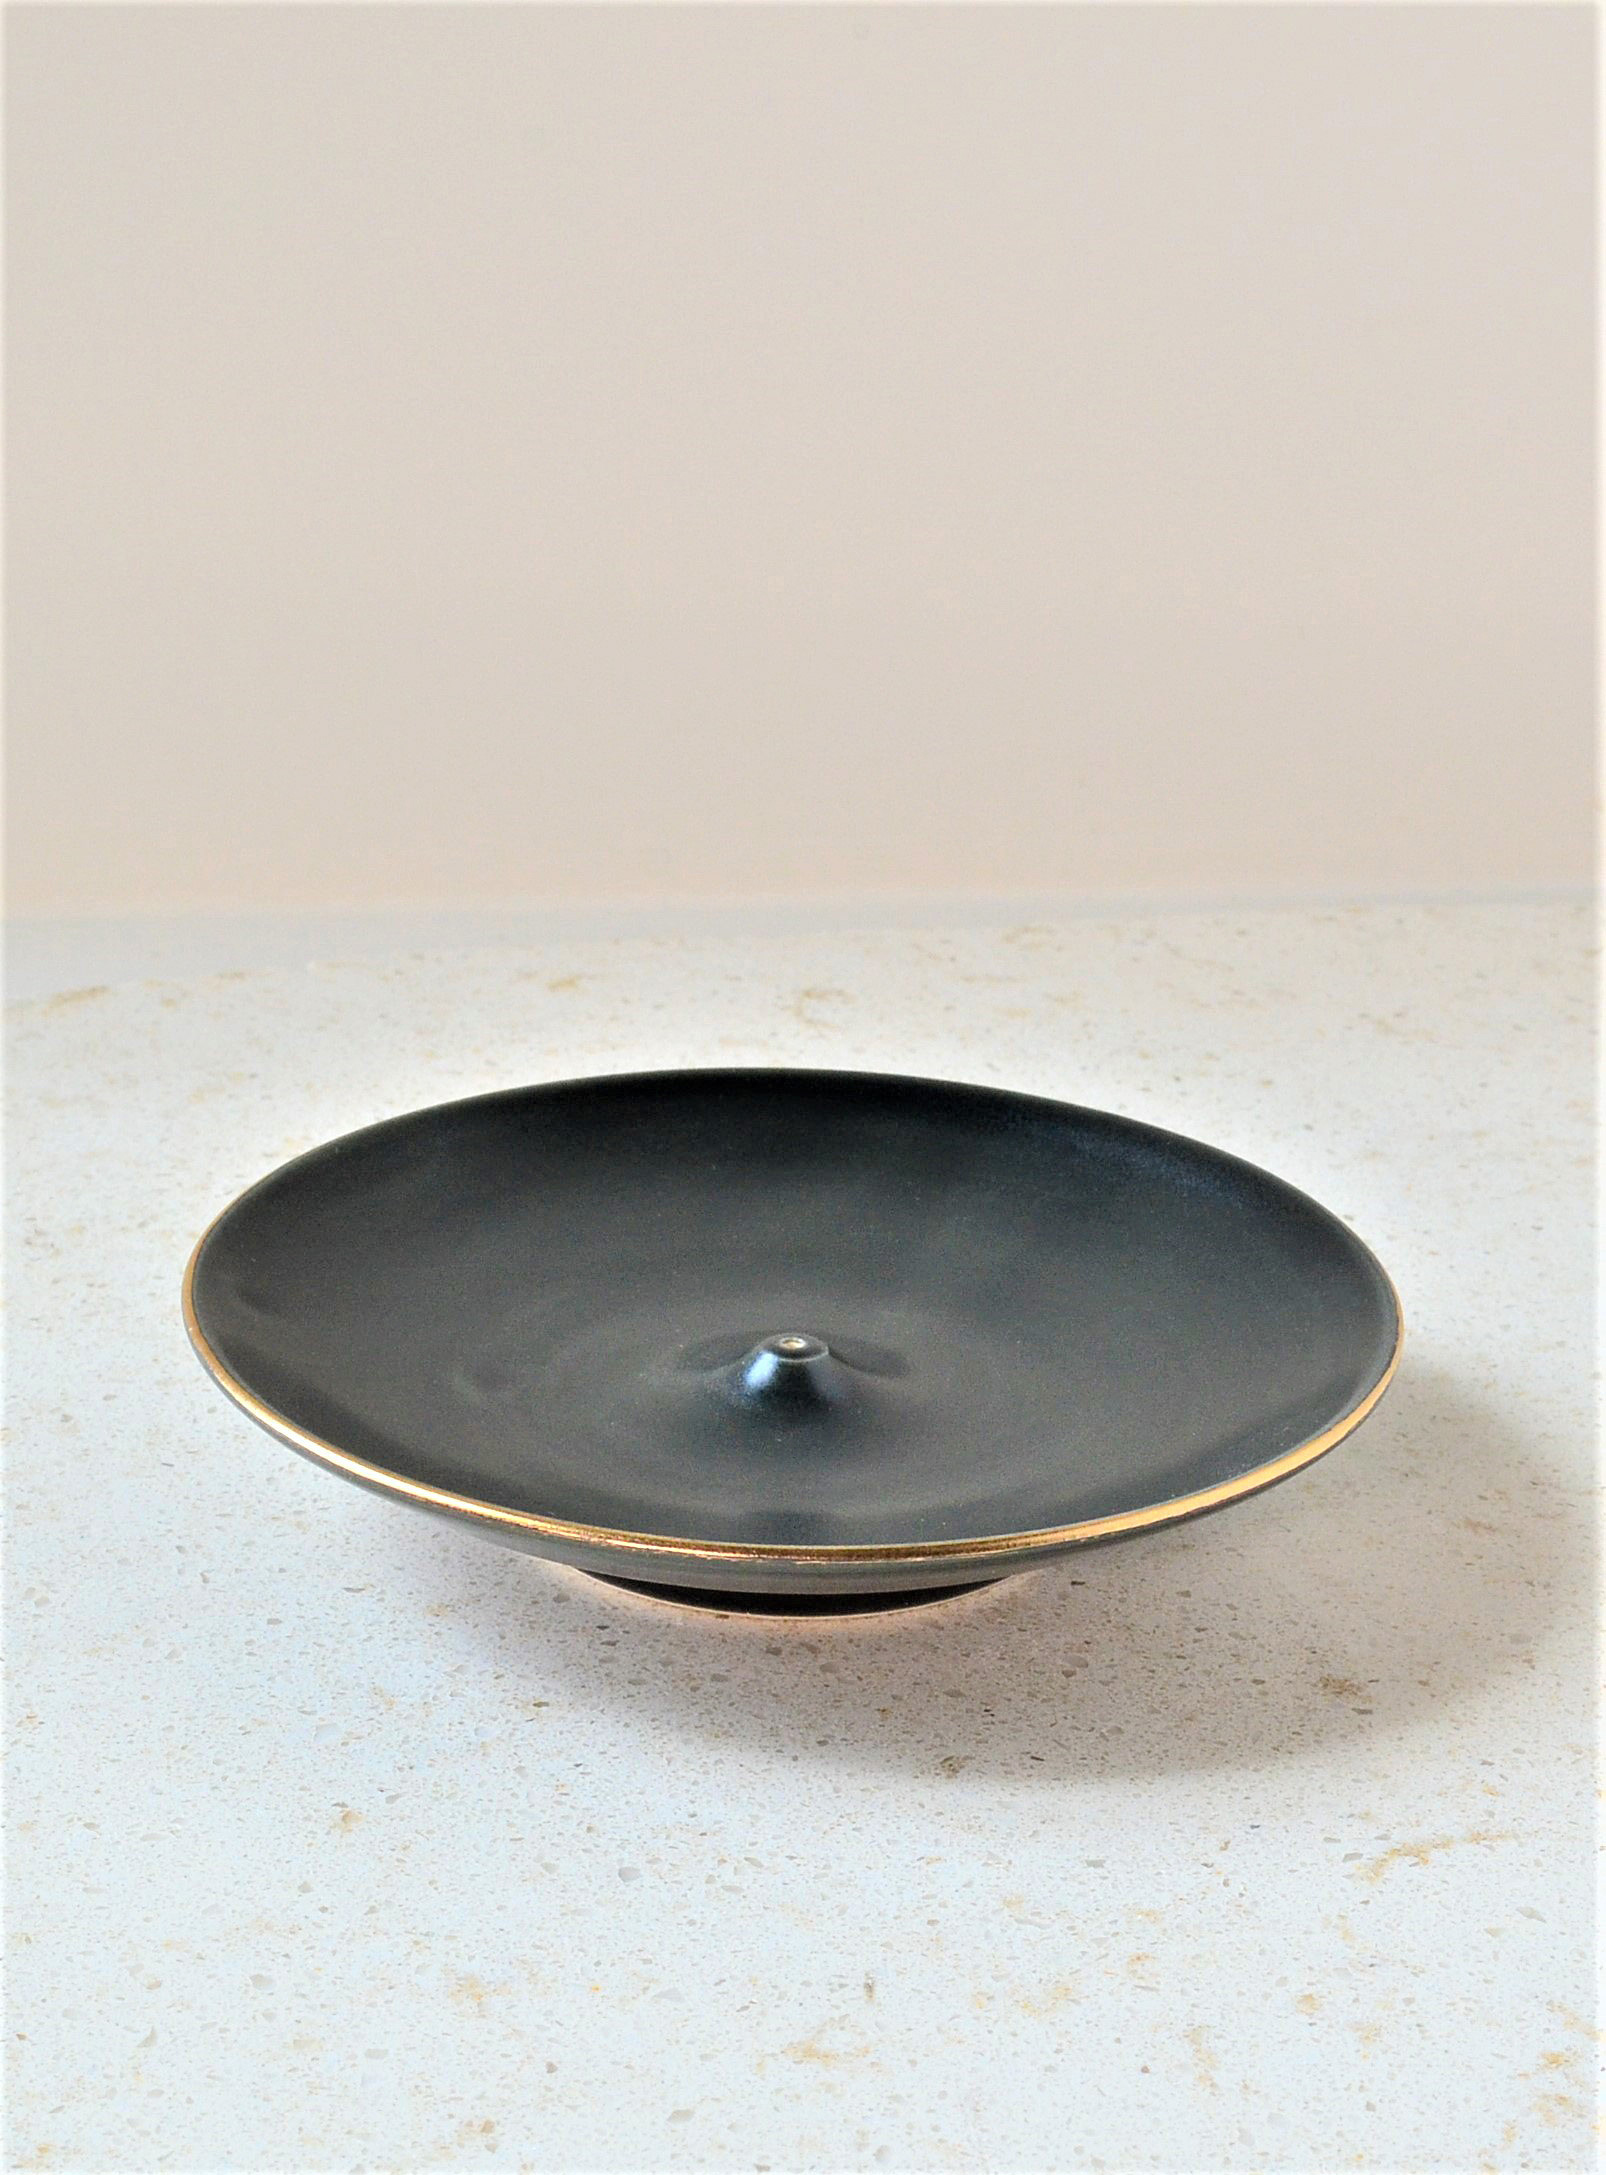 Akai Ceramic Studio - Le porte-encens en porcelaine noire bordure dorée